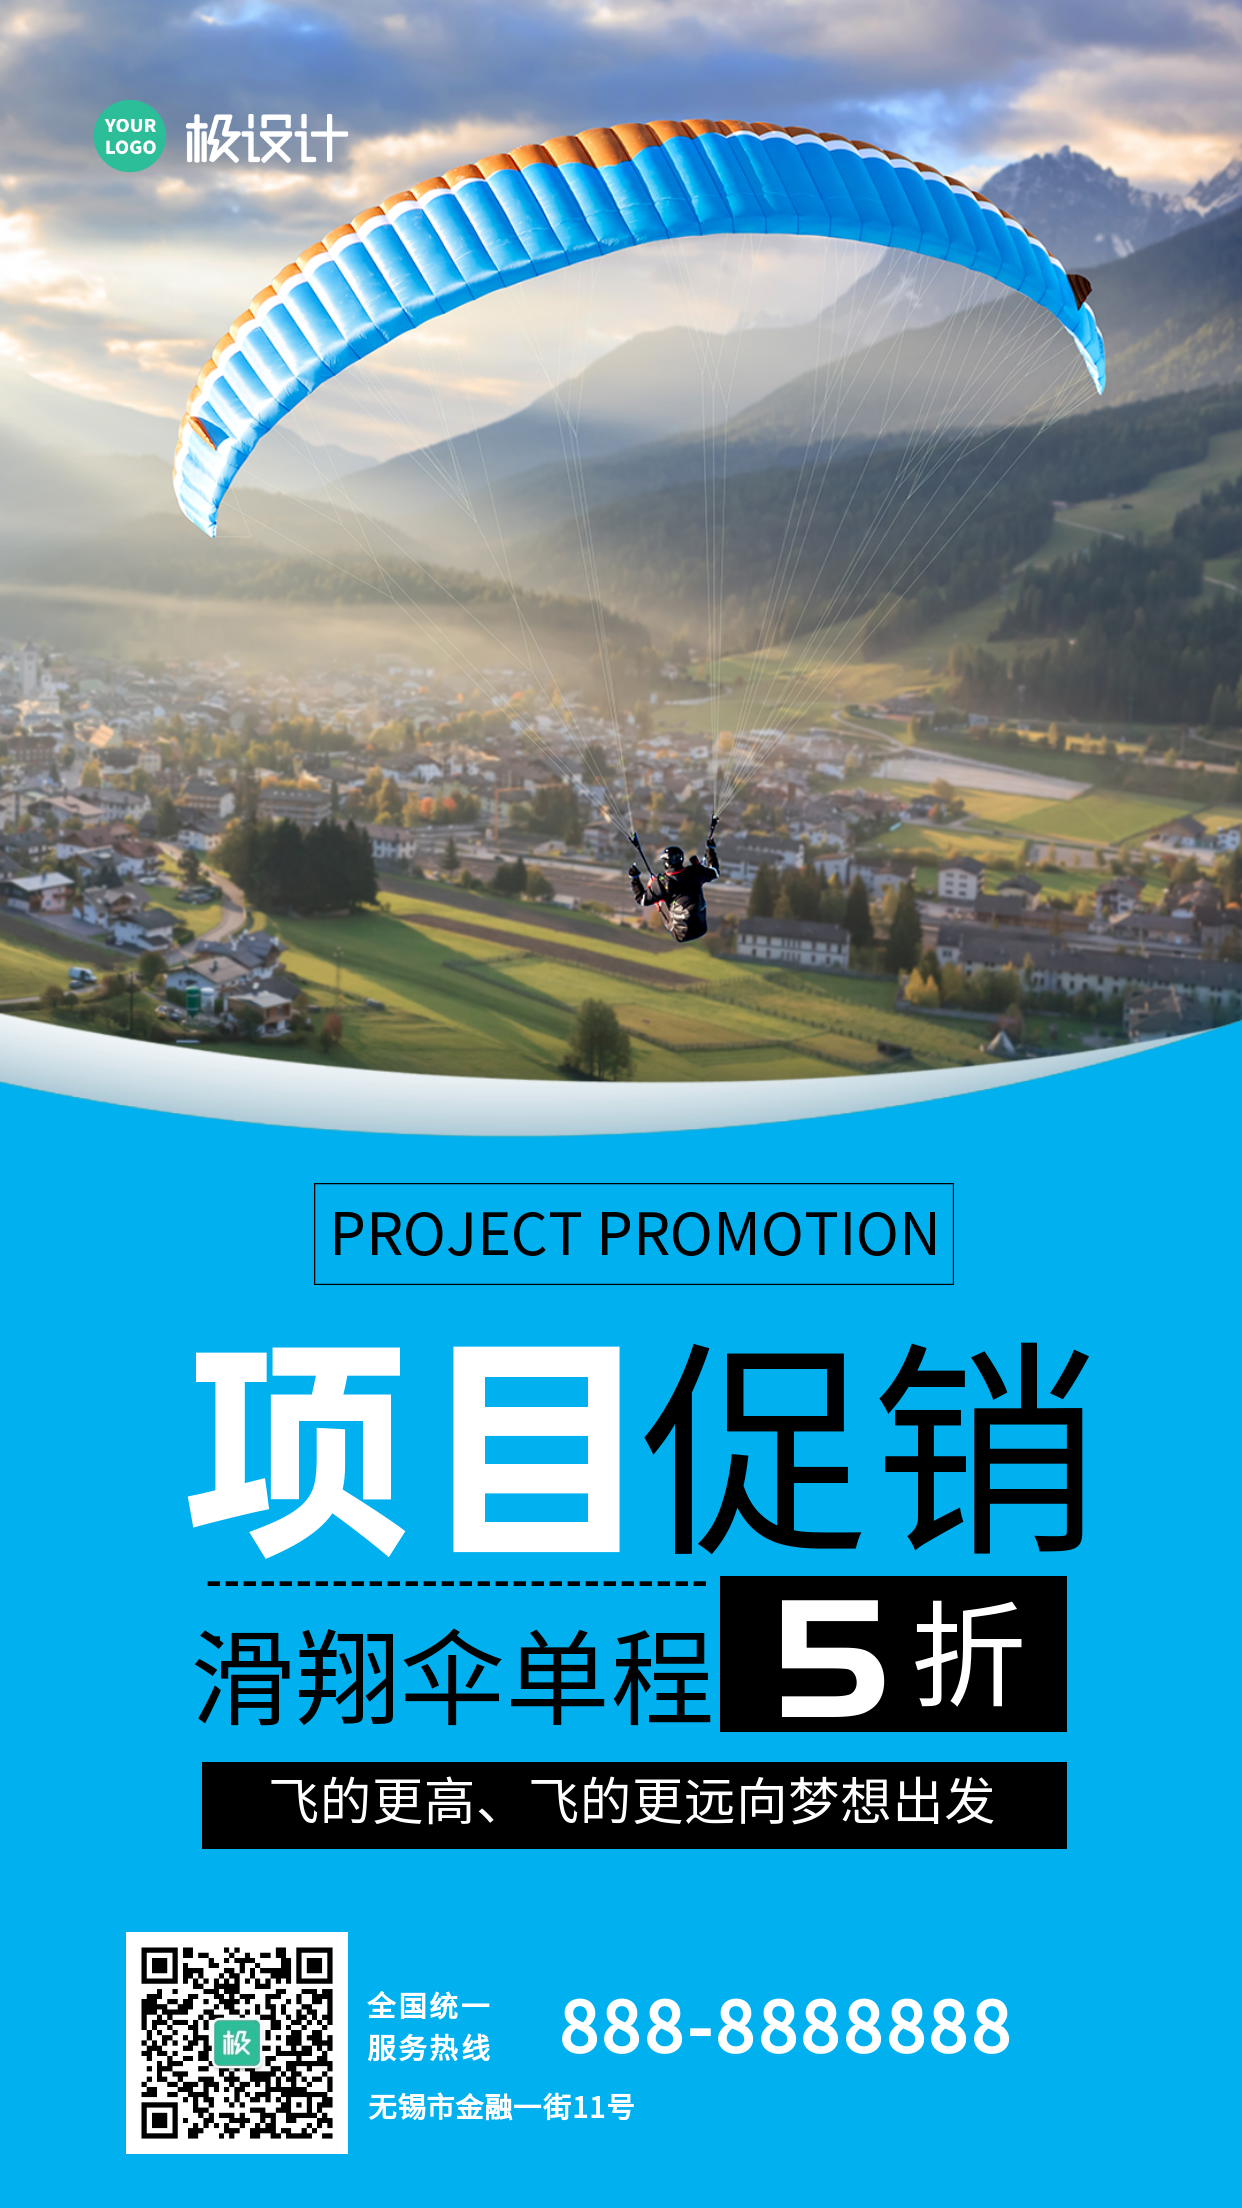 滑翔伞单程项目促销